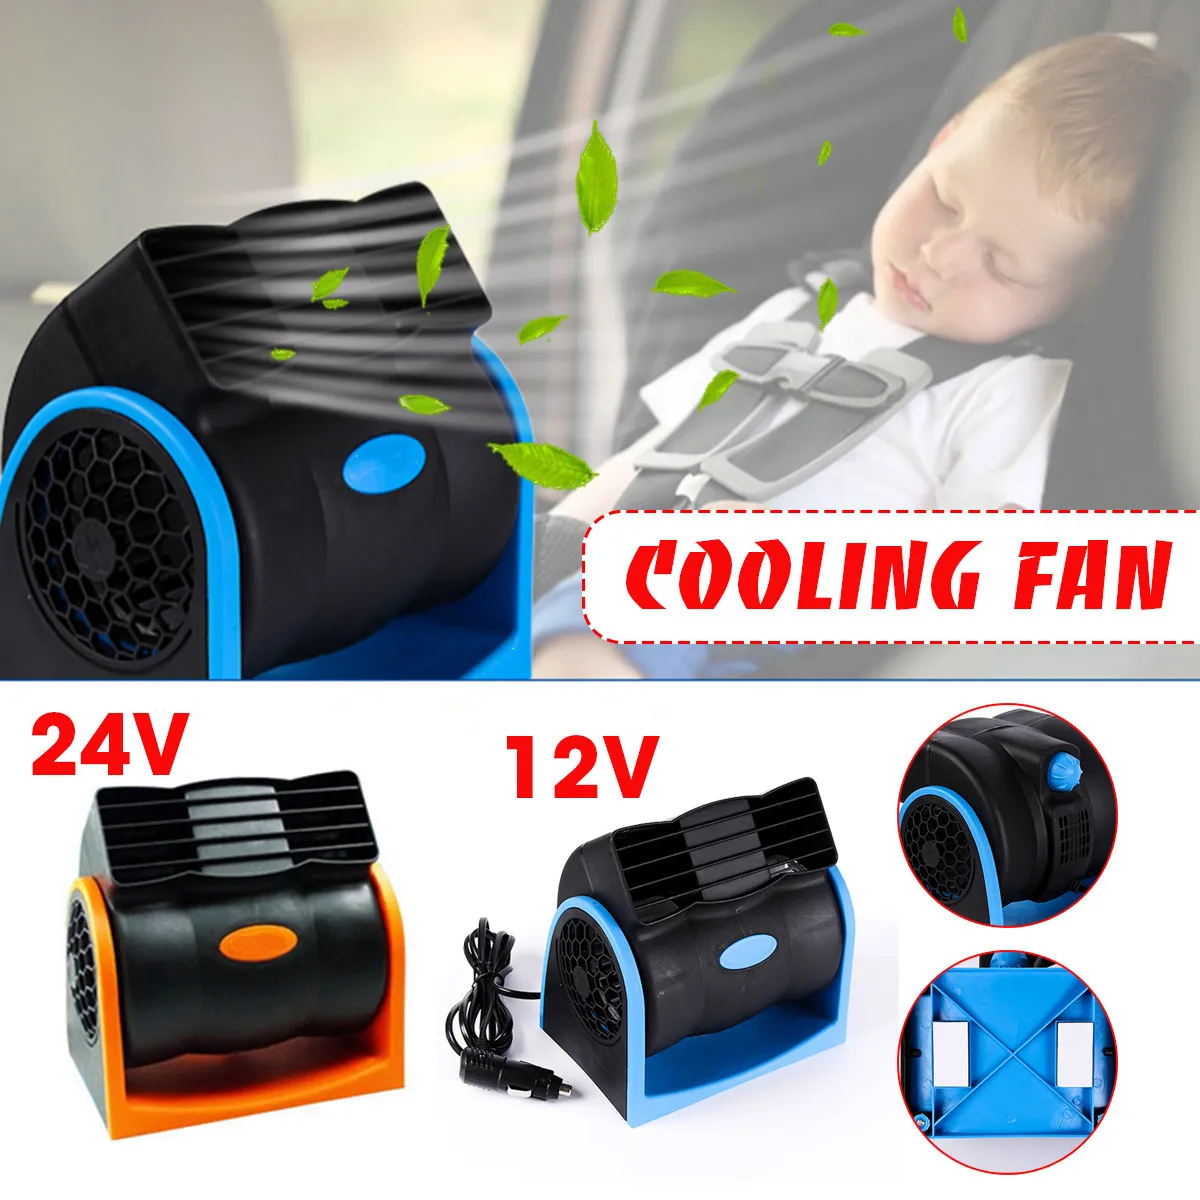 Justerbar universalbil Elektrisk luftkylning Radiatorkylare Accessorie Swing Fan Ventilation Board Summer 12V / 24V